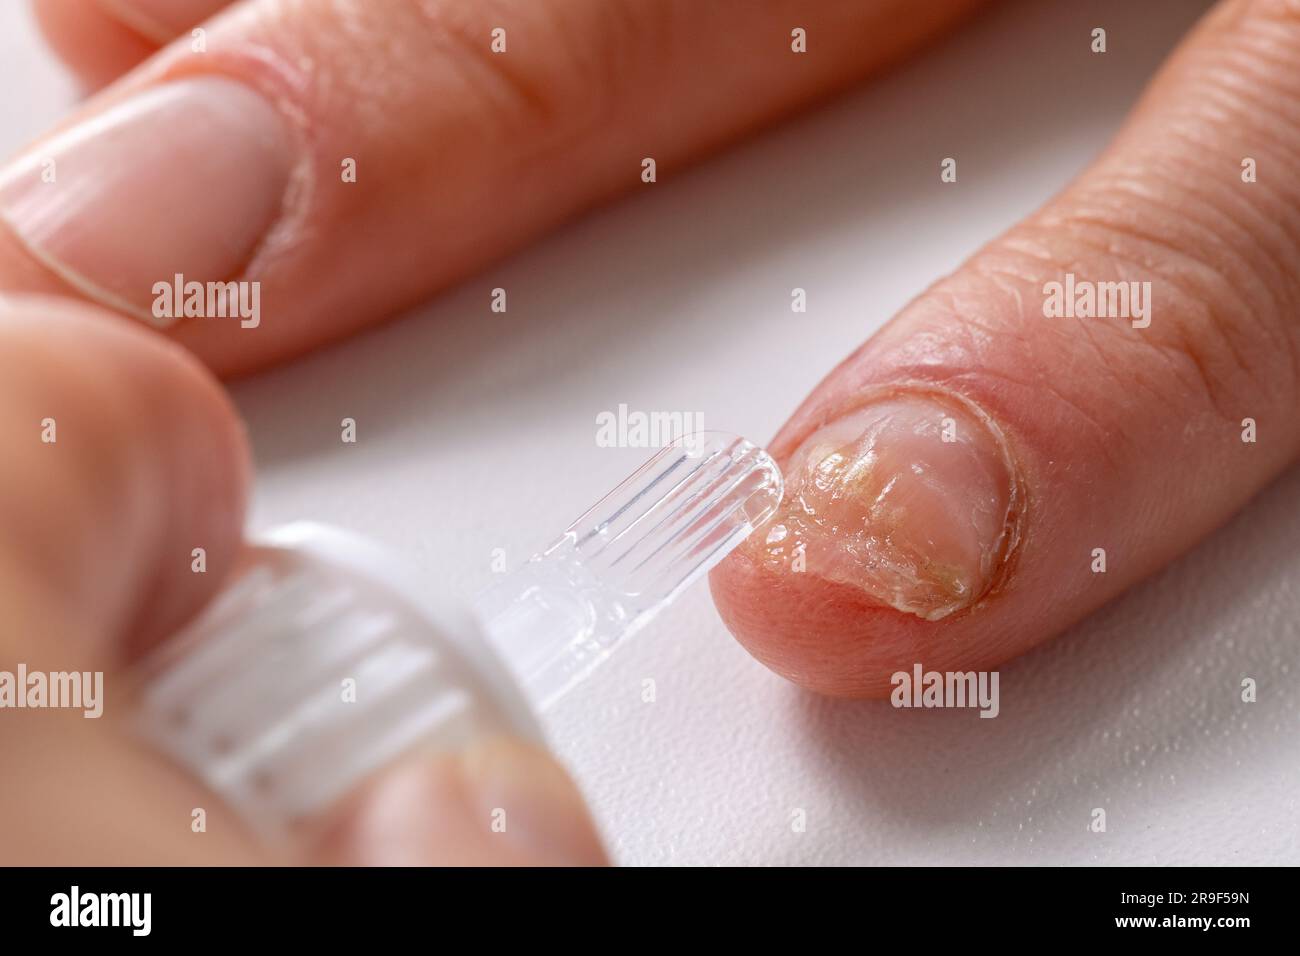 Felon Finger Infection: Causes, Symptoms & Treatment